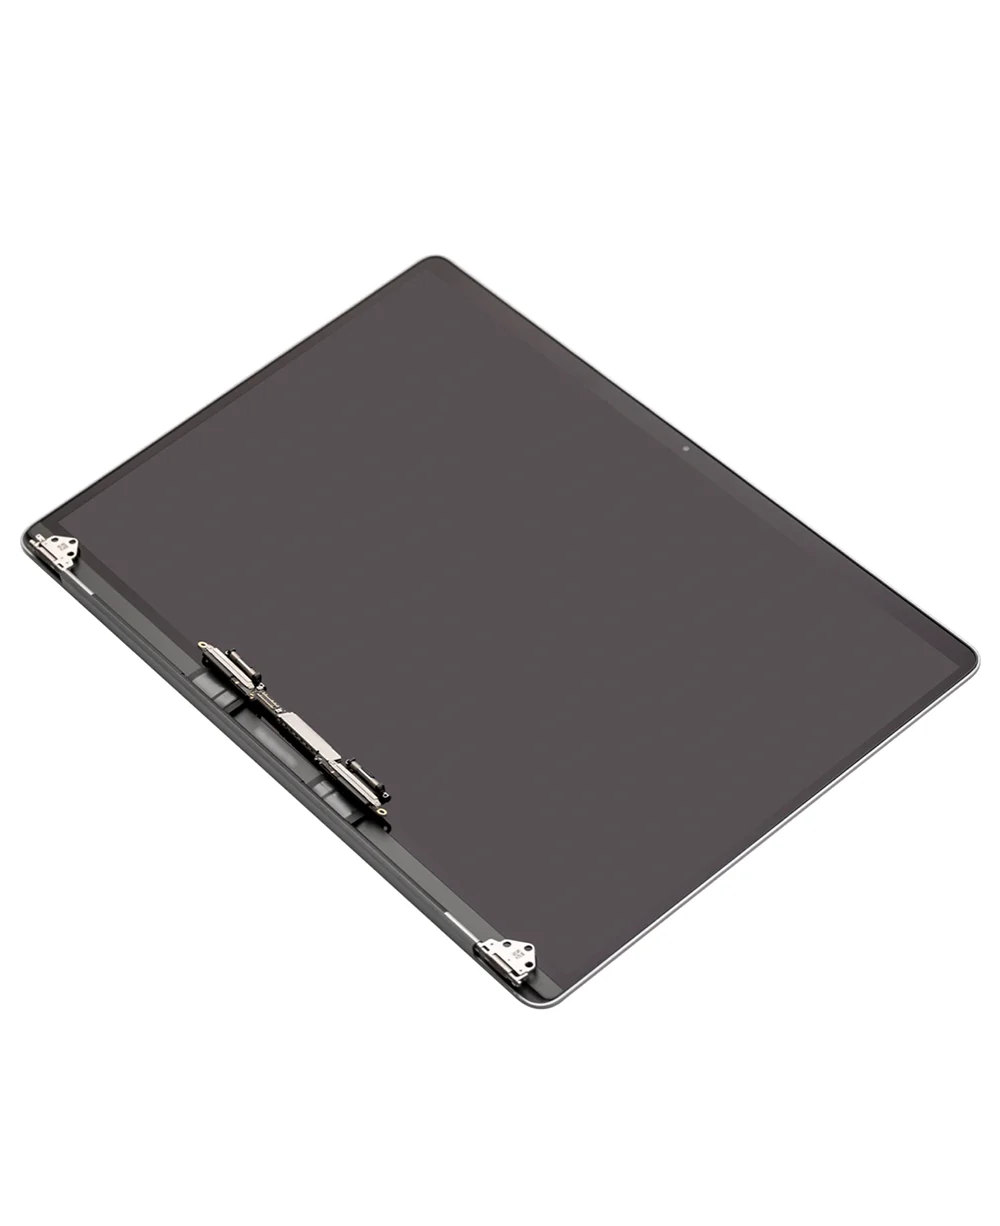 Tanio Oryginalny zestaw Lcd do laptopa Macbook Pro Retina 13